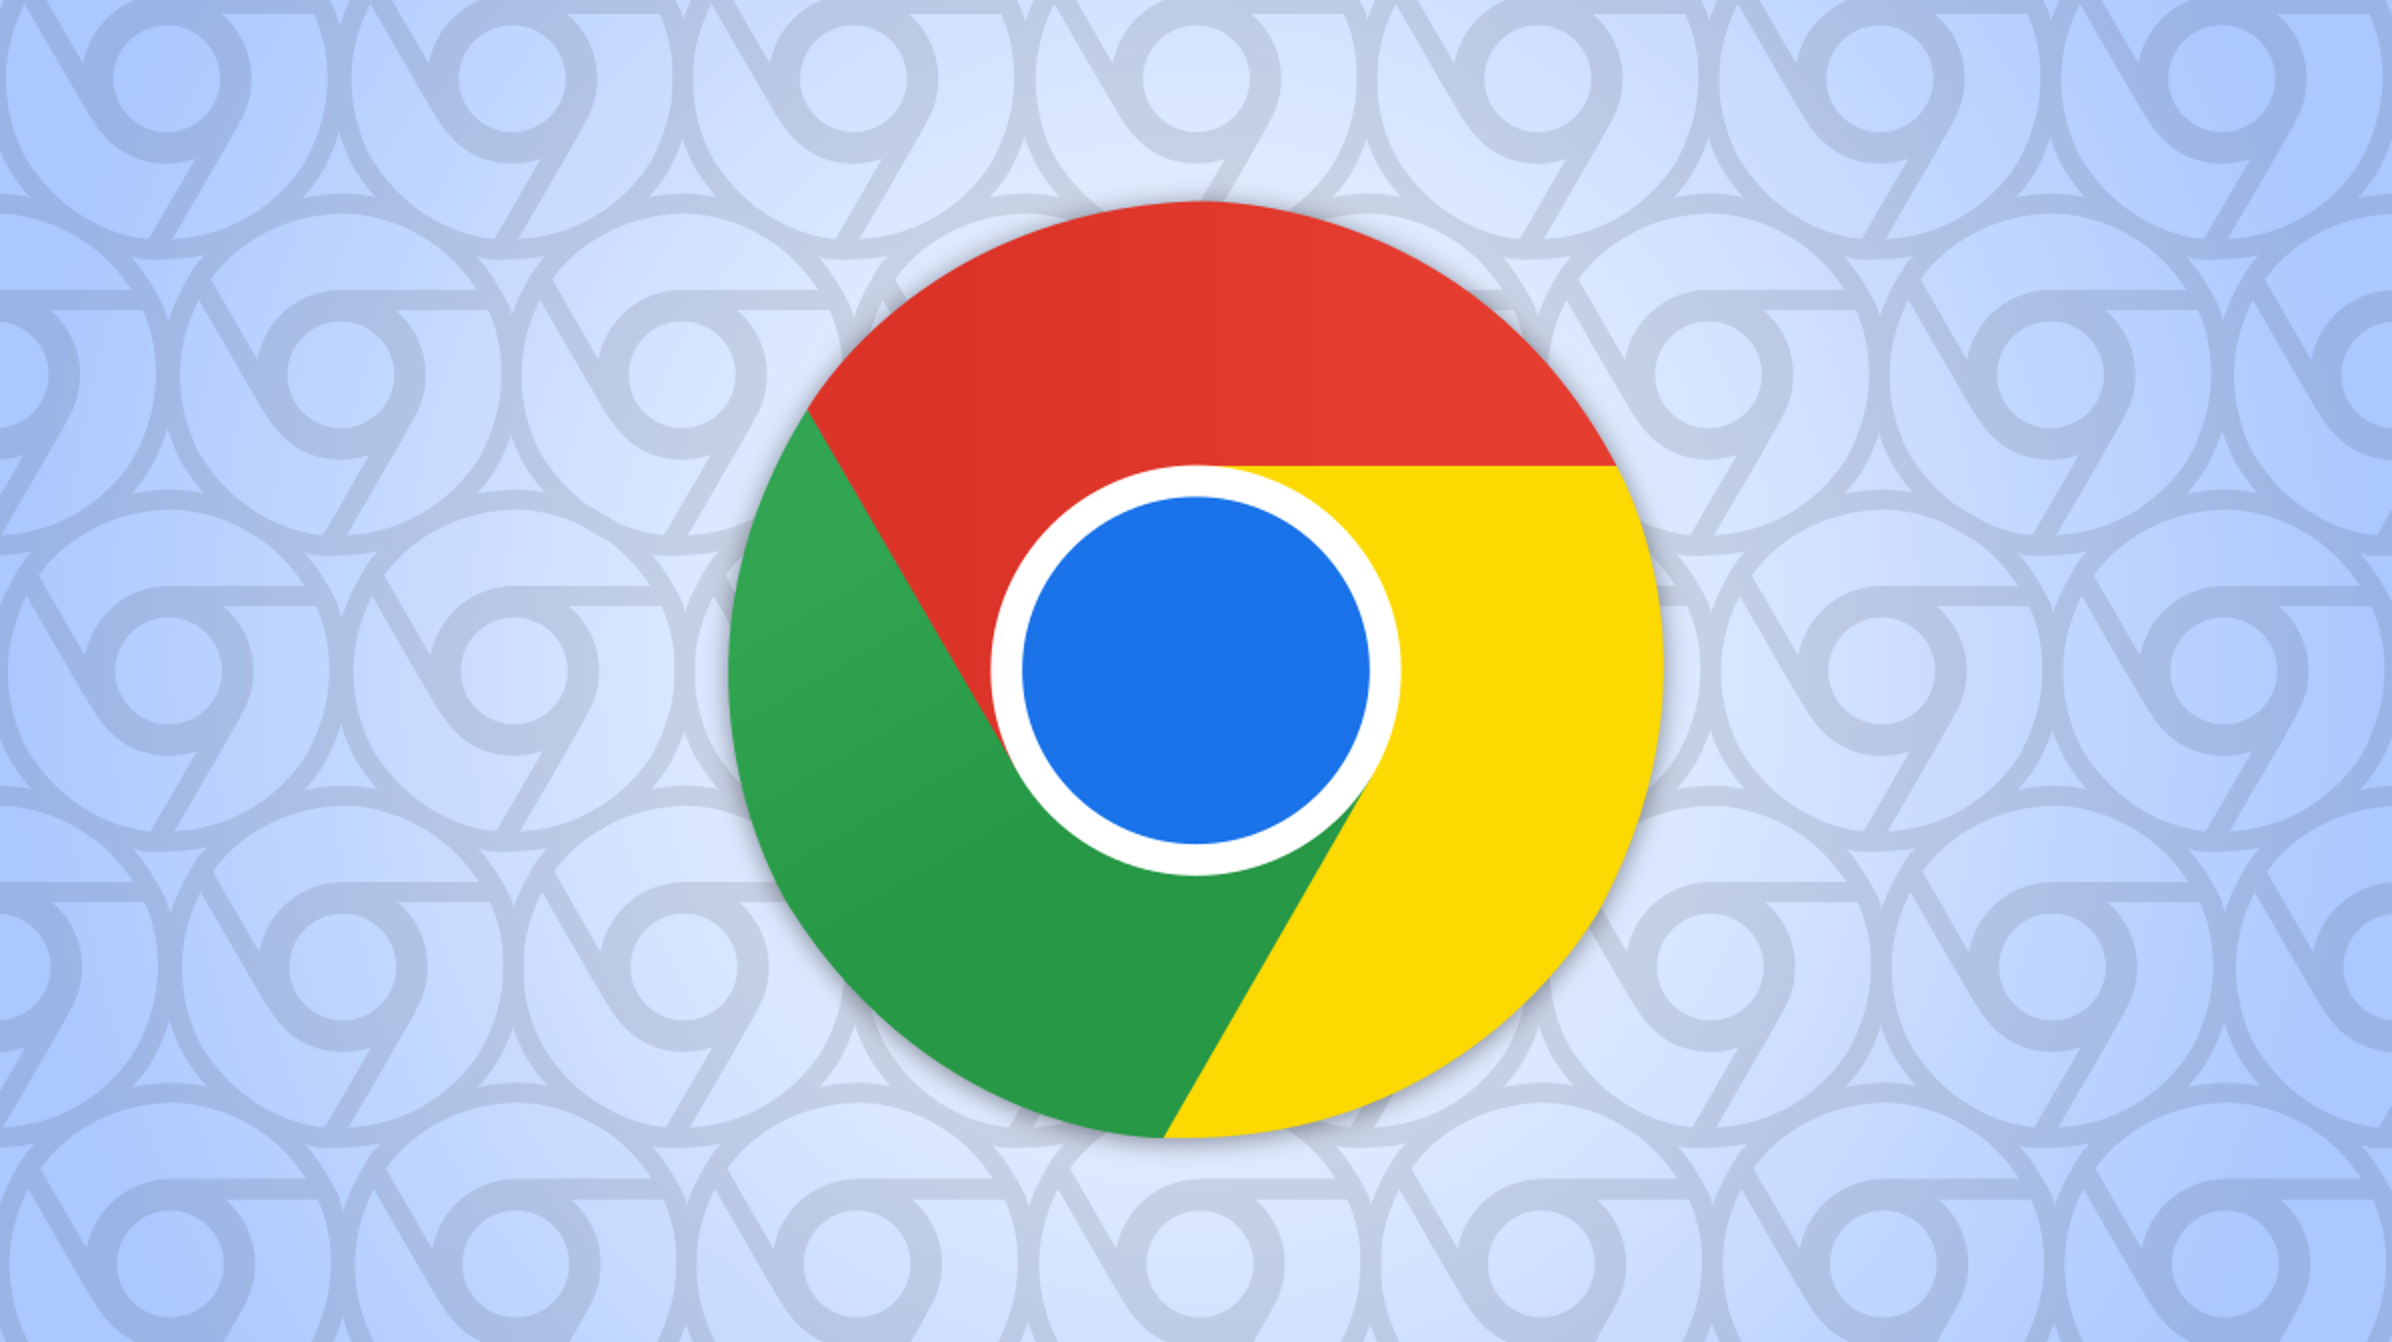 Поиск закладок стал проще: Google обновила браузер Chrome